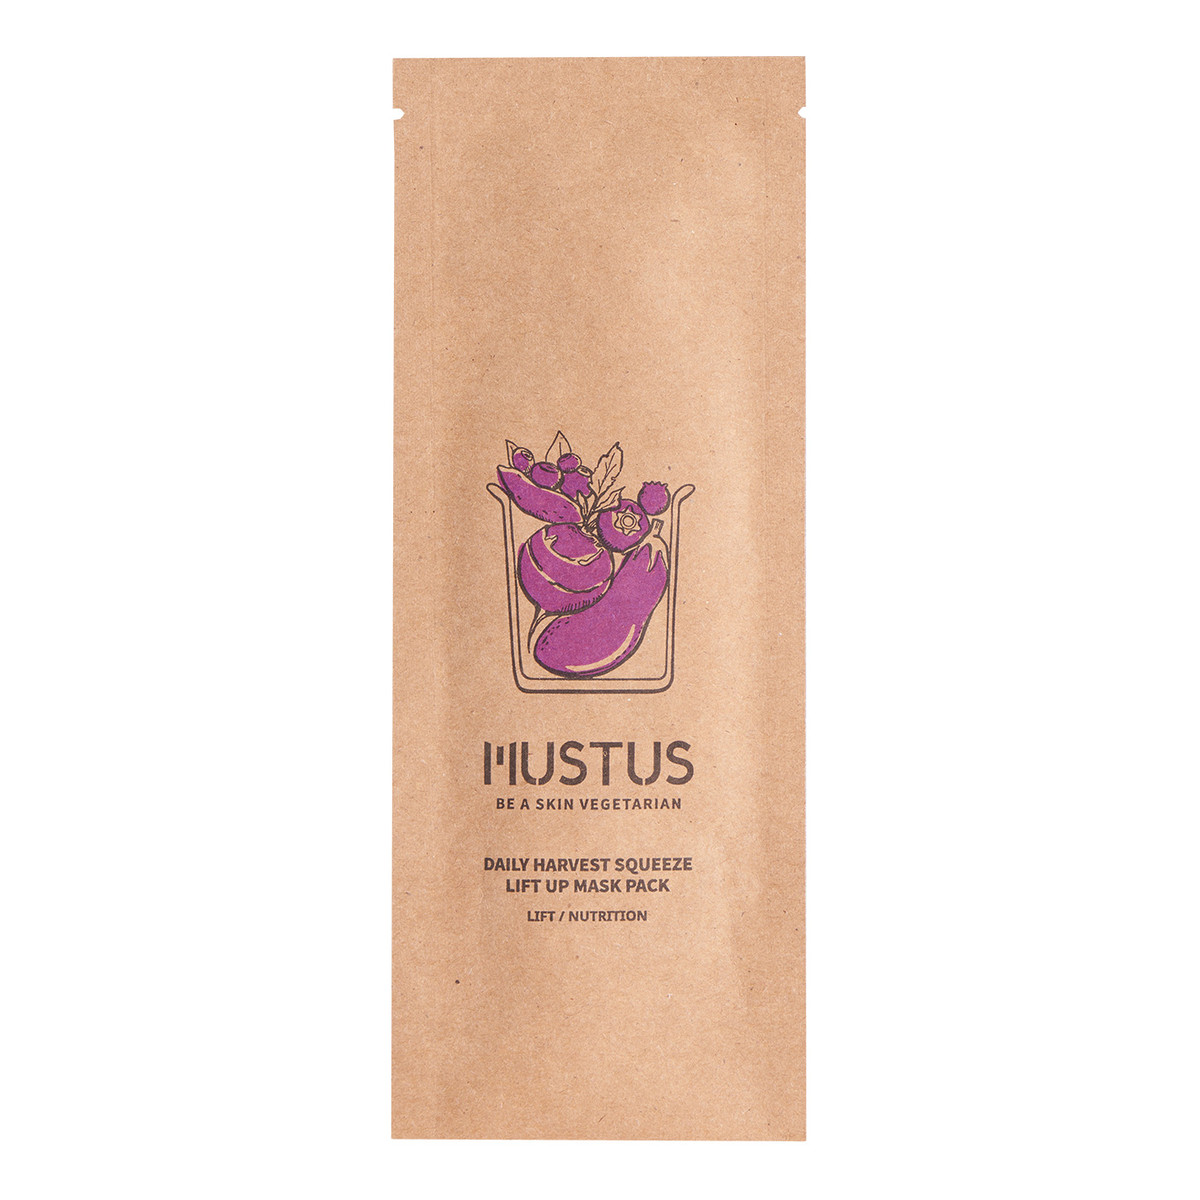 Mustus BE A SKIN VEGETARIAN! Daily Harvest Squeeze Lift Up Maseczka w płachcie ujędrniająca, stworzona na bazie kompleksu ekstraktów z fioletowych warzyw i owoców 20g